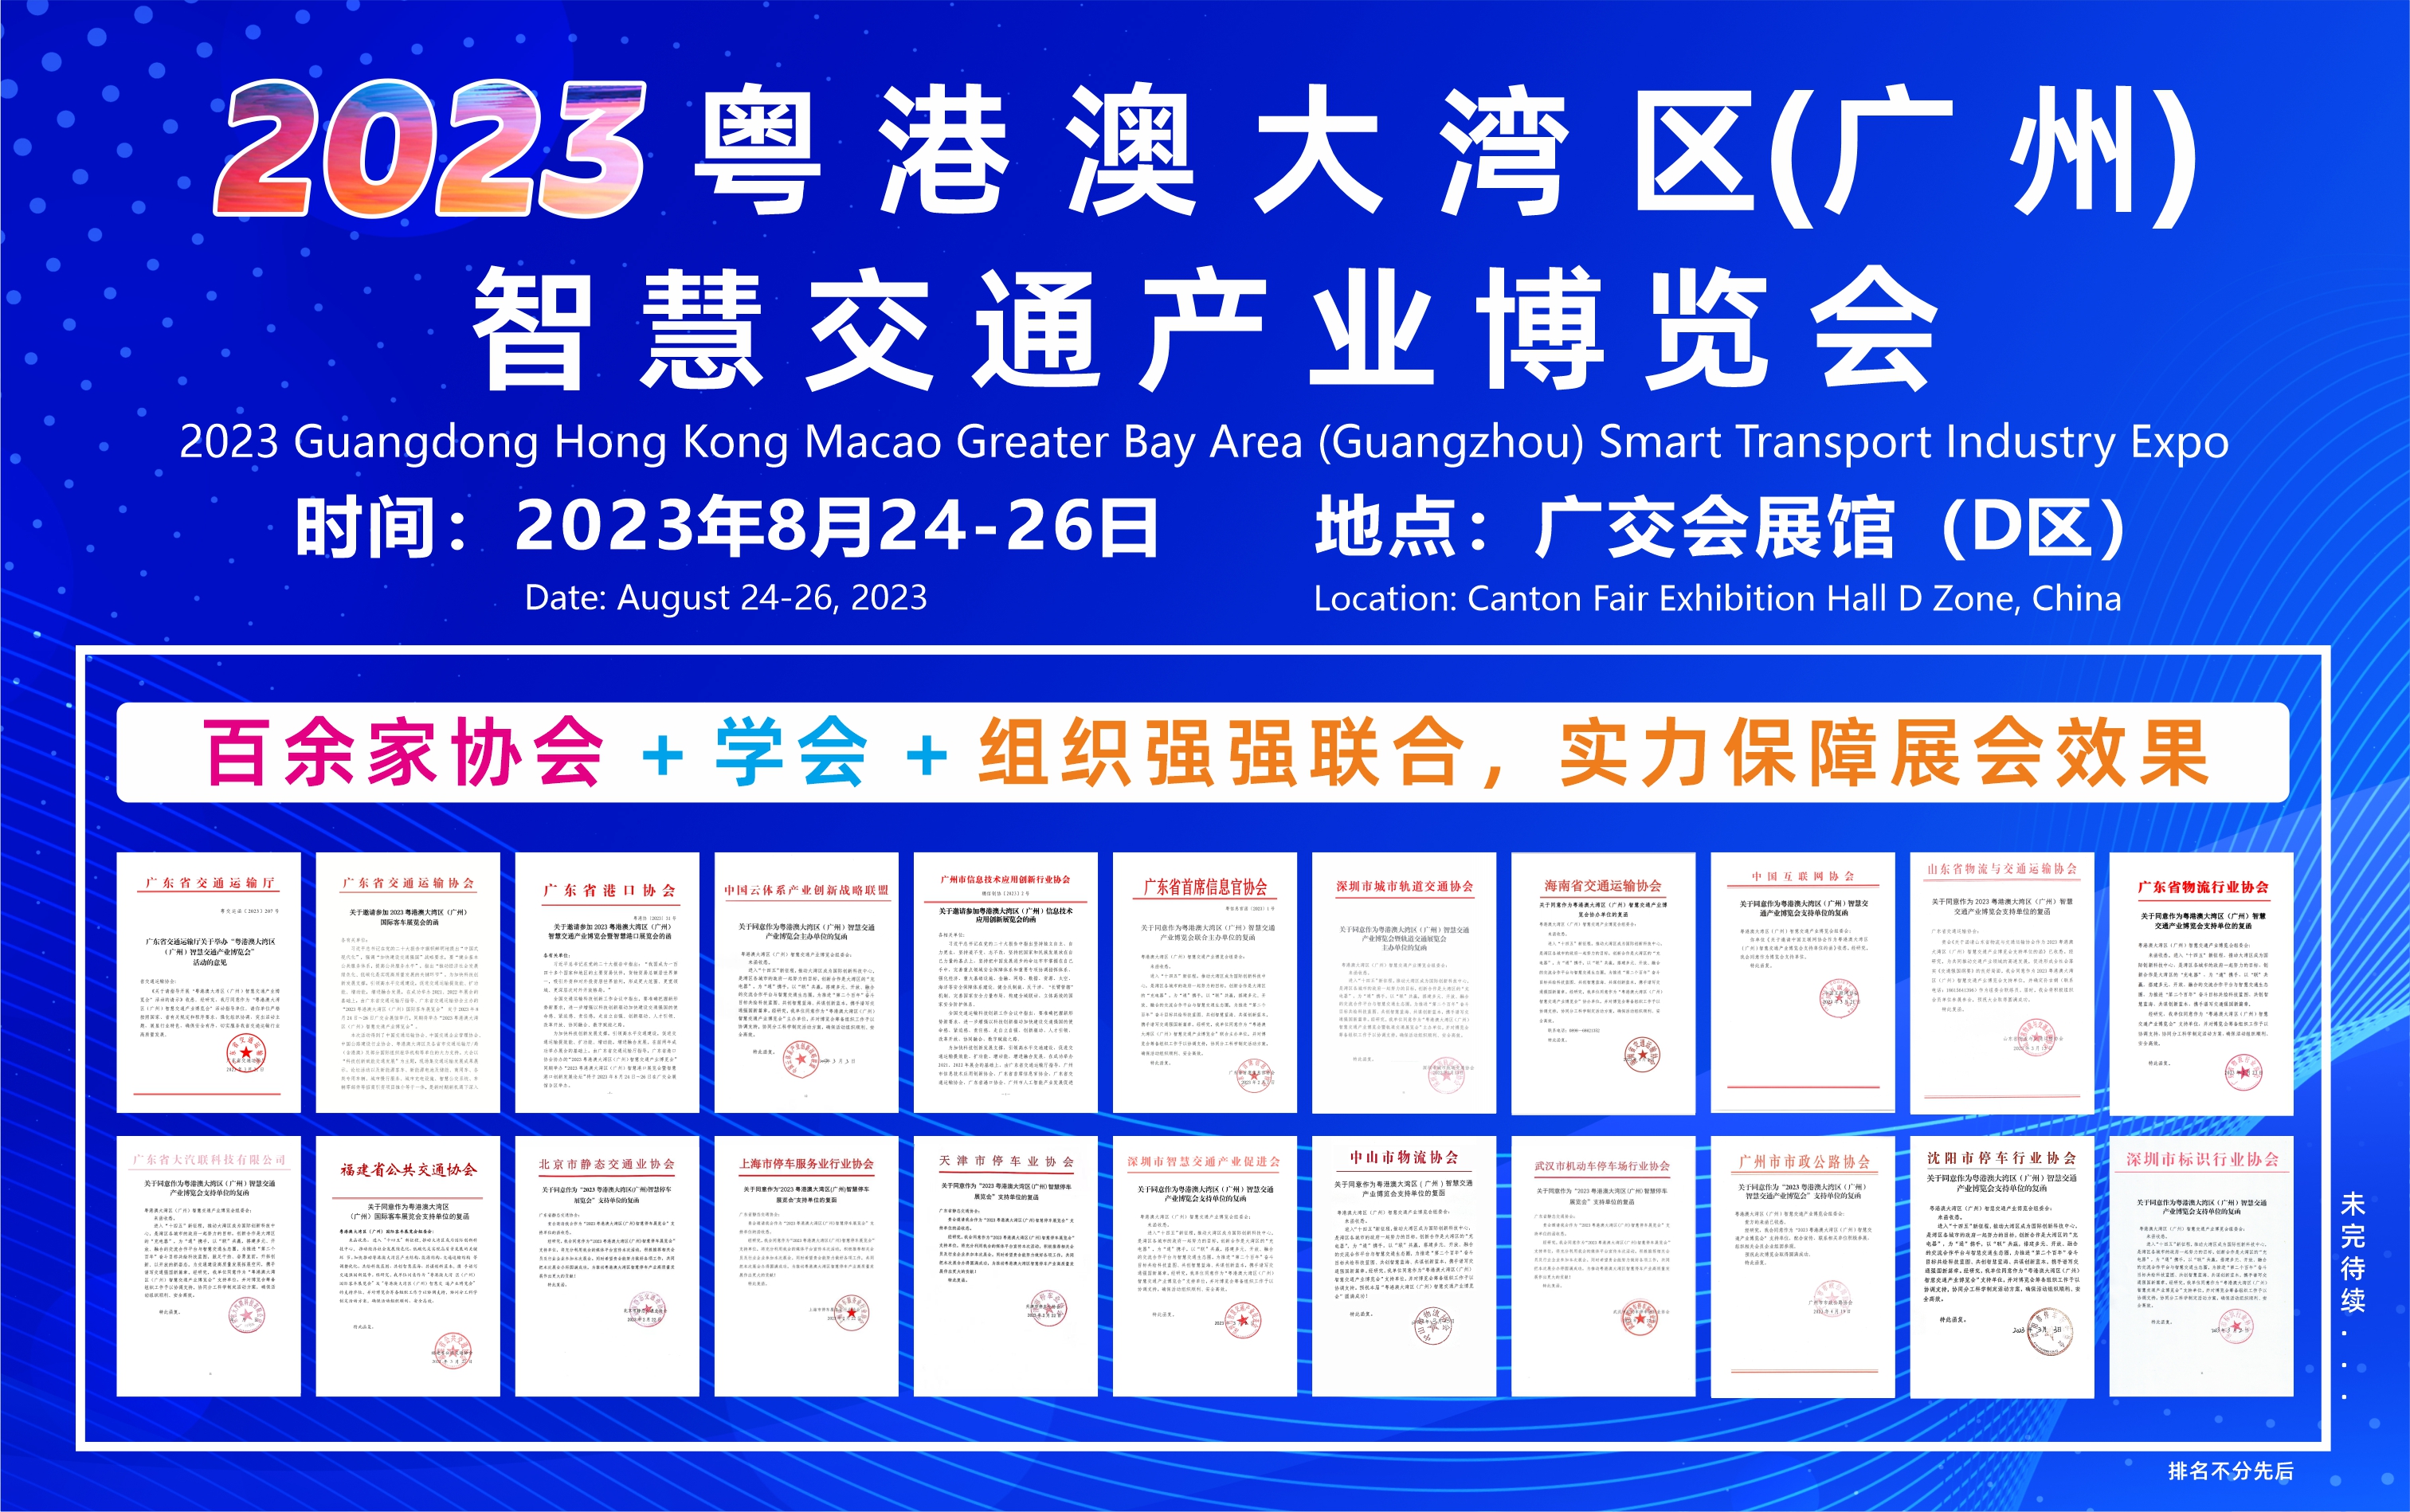 重磅‼️《广东省交通运输厅》指导举办2023广州智慧交通博览会！